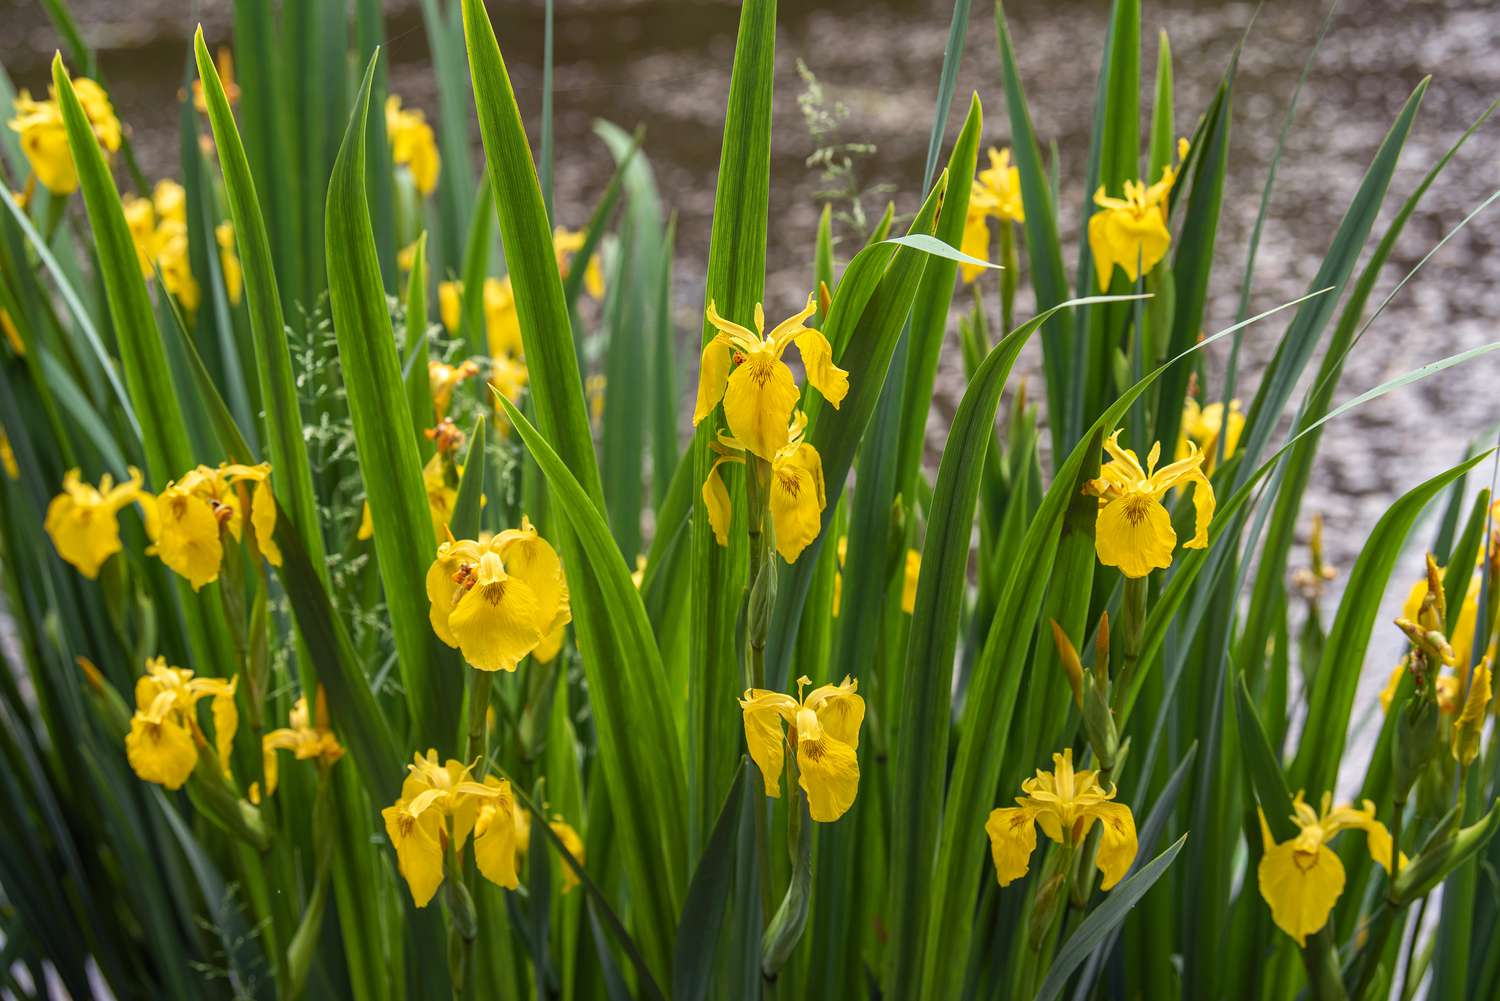 Irisblüten mit hohen schwertförmigen Blättern und gelben Blütenblättern an dünnen Stielen